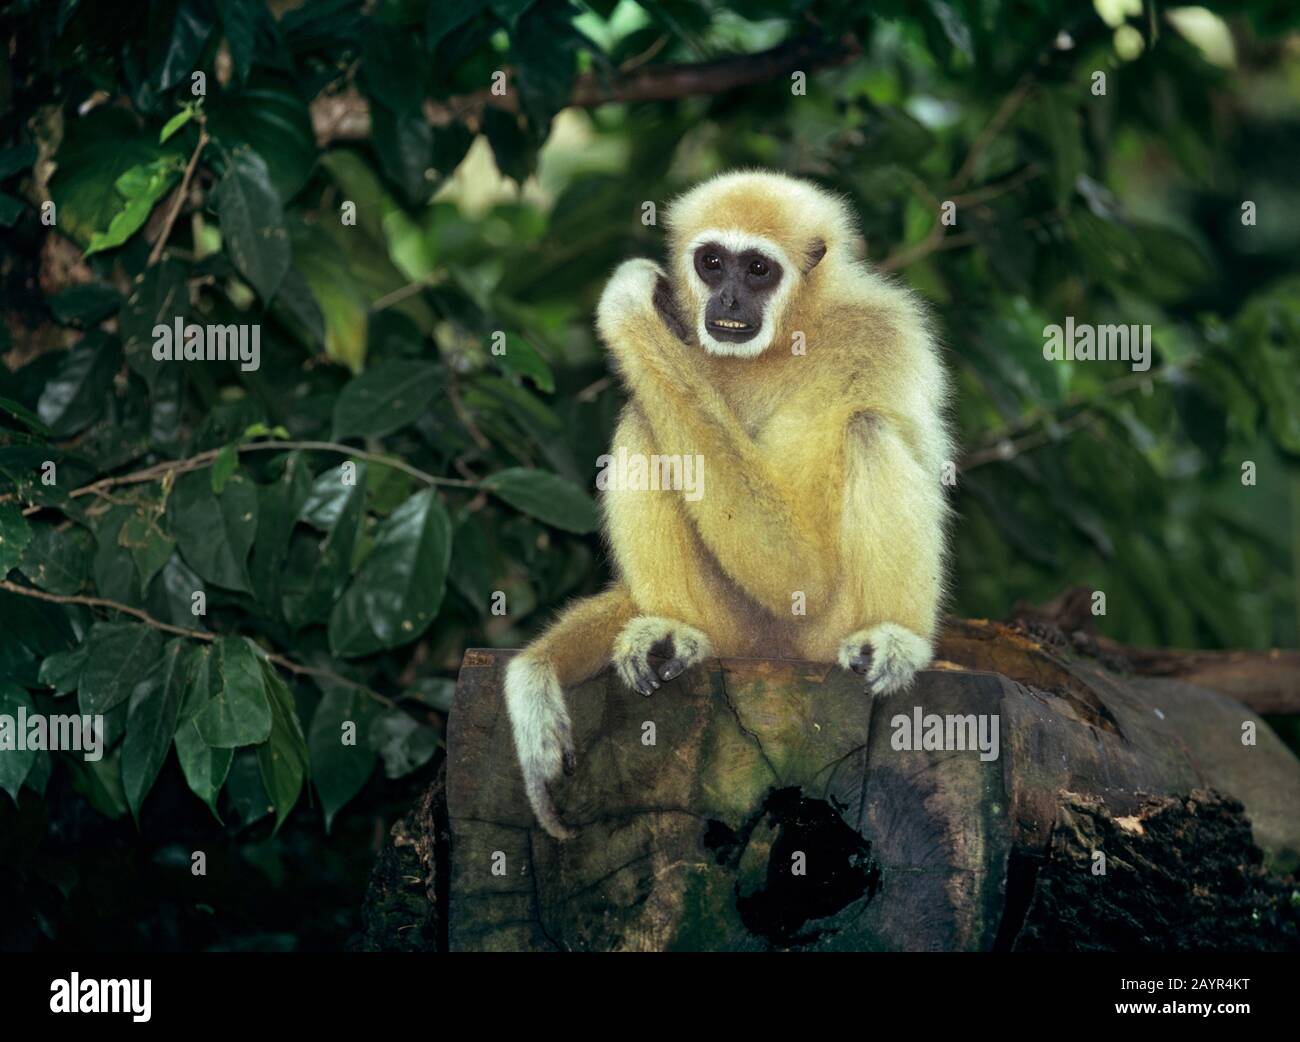 Gibbon comune, gibbon bianco-mano (ylobates lar), giovane animale seduto su un tronco di albero morto, colore sabbia Foto Stock